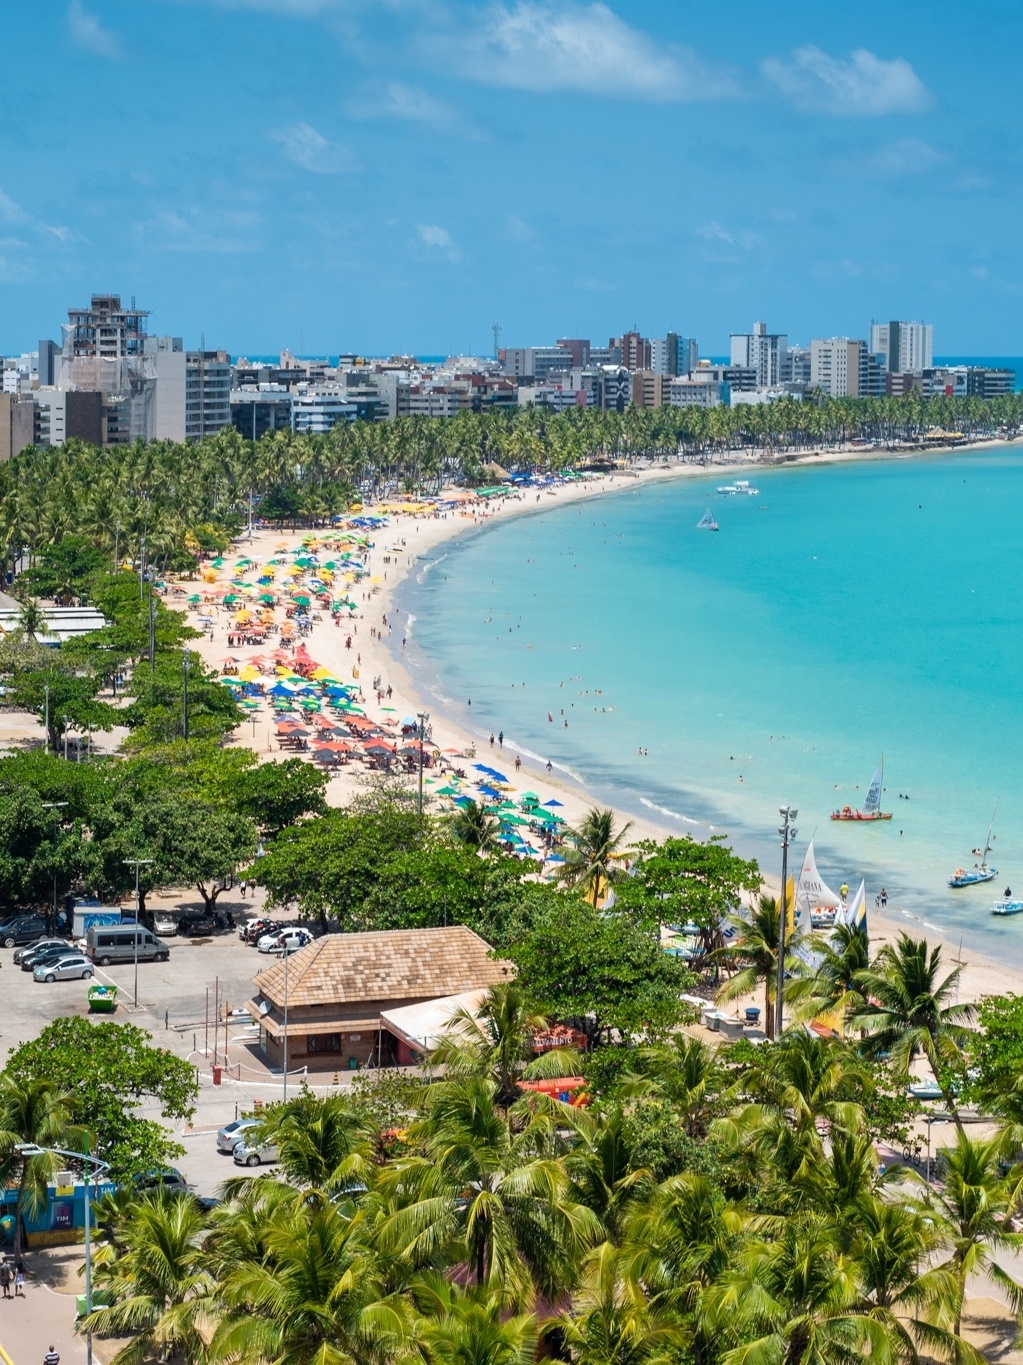 Pacotes de viagem por até R$ 2 mil no verão têm praia, serra e natureza -  30/12/2022 - UOL Nossa